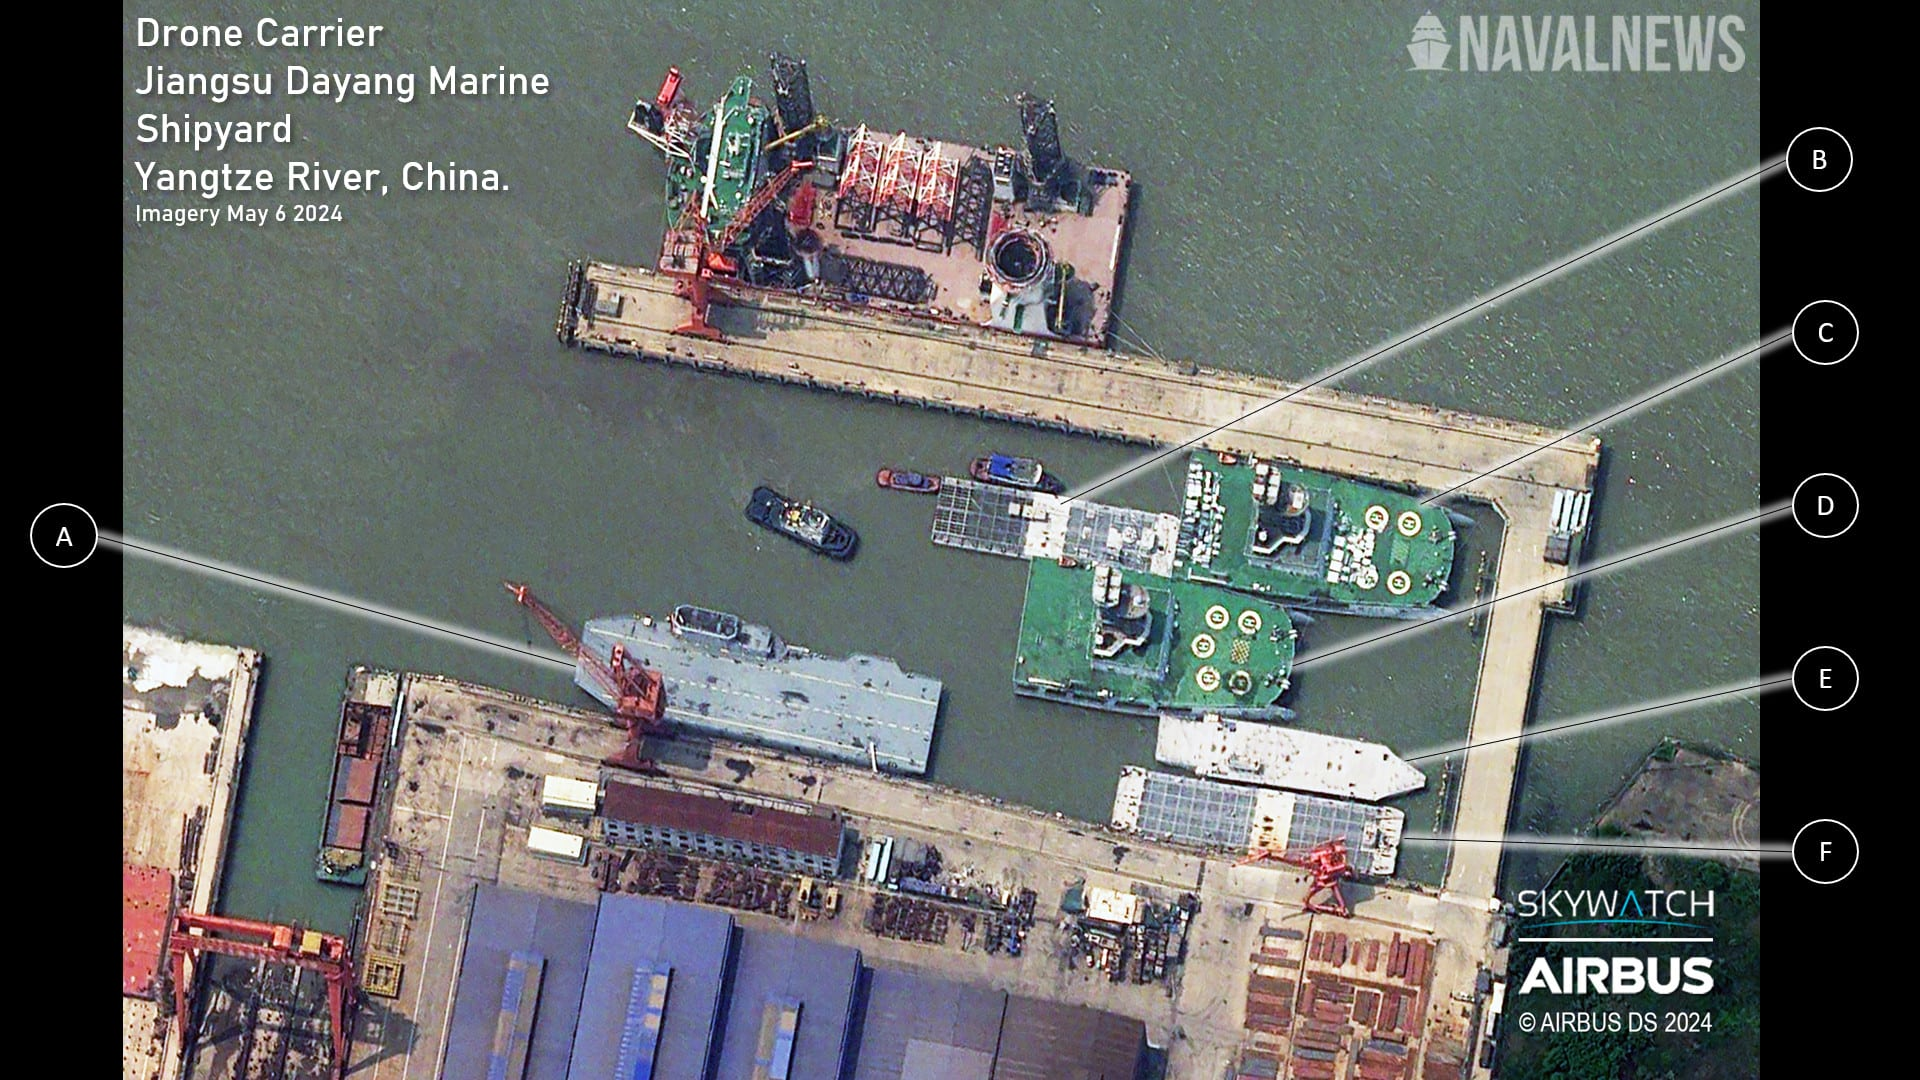 港媒:卫星图像推测中国可能在造世界第一艘专用无人机航母